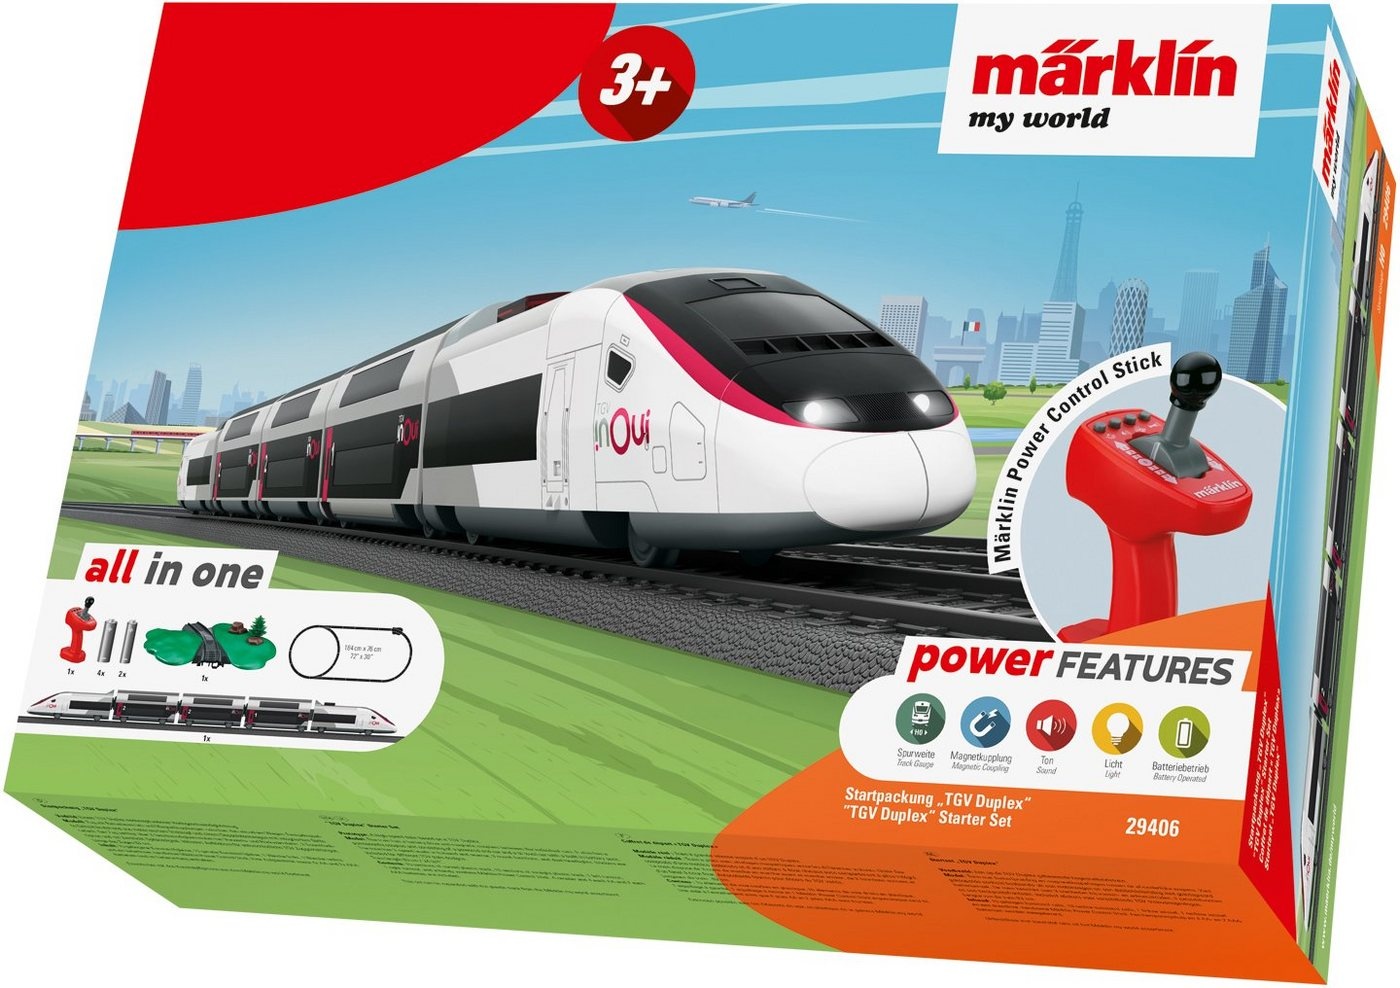 Märklin Modelleisenbahn-Set Märklin my world - Startpackung TGV Duplex - 29406, Spur H0, mit Licht und Sound weiß